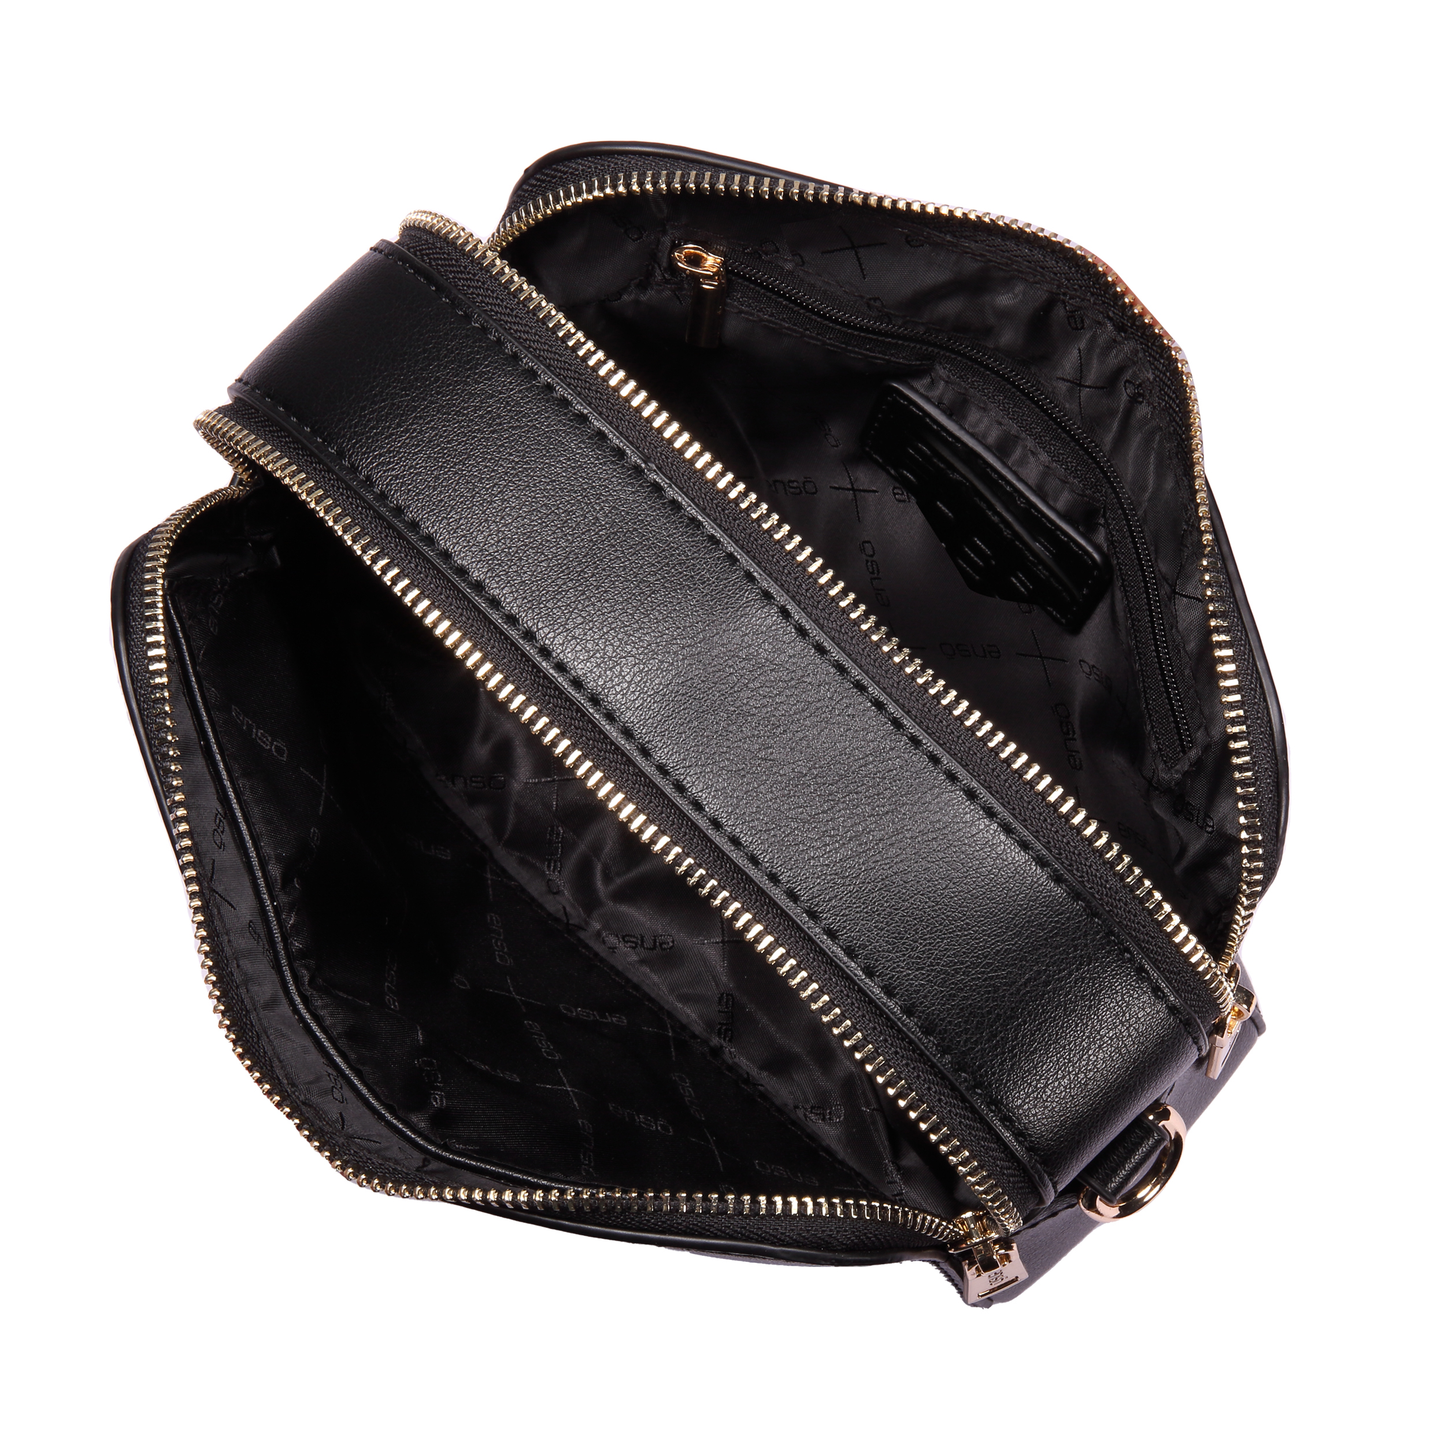 Bandolera Enso Black Bags EB303CBB Tipo Urbana Para Mujer